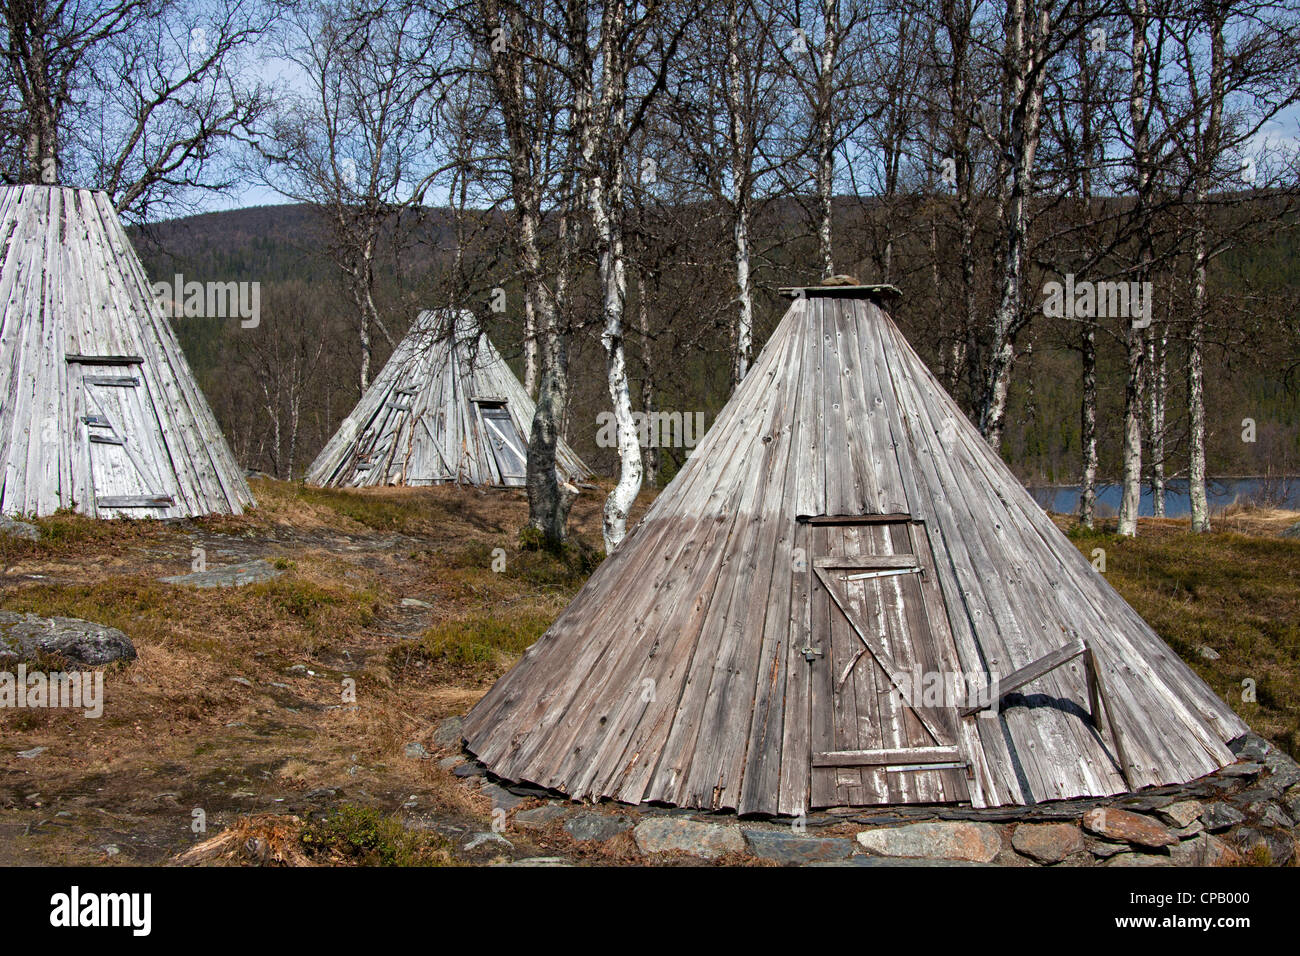 Goahti / kota, Sami traditionnelles cabanes de bois dans la toundra, Laponie, Suède Banque D'Images